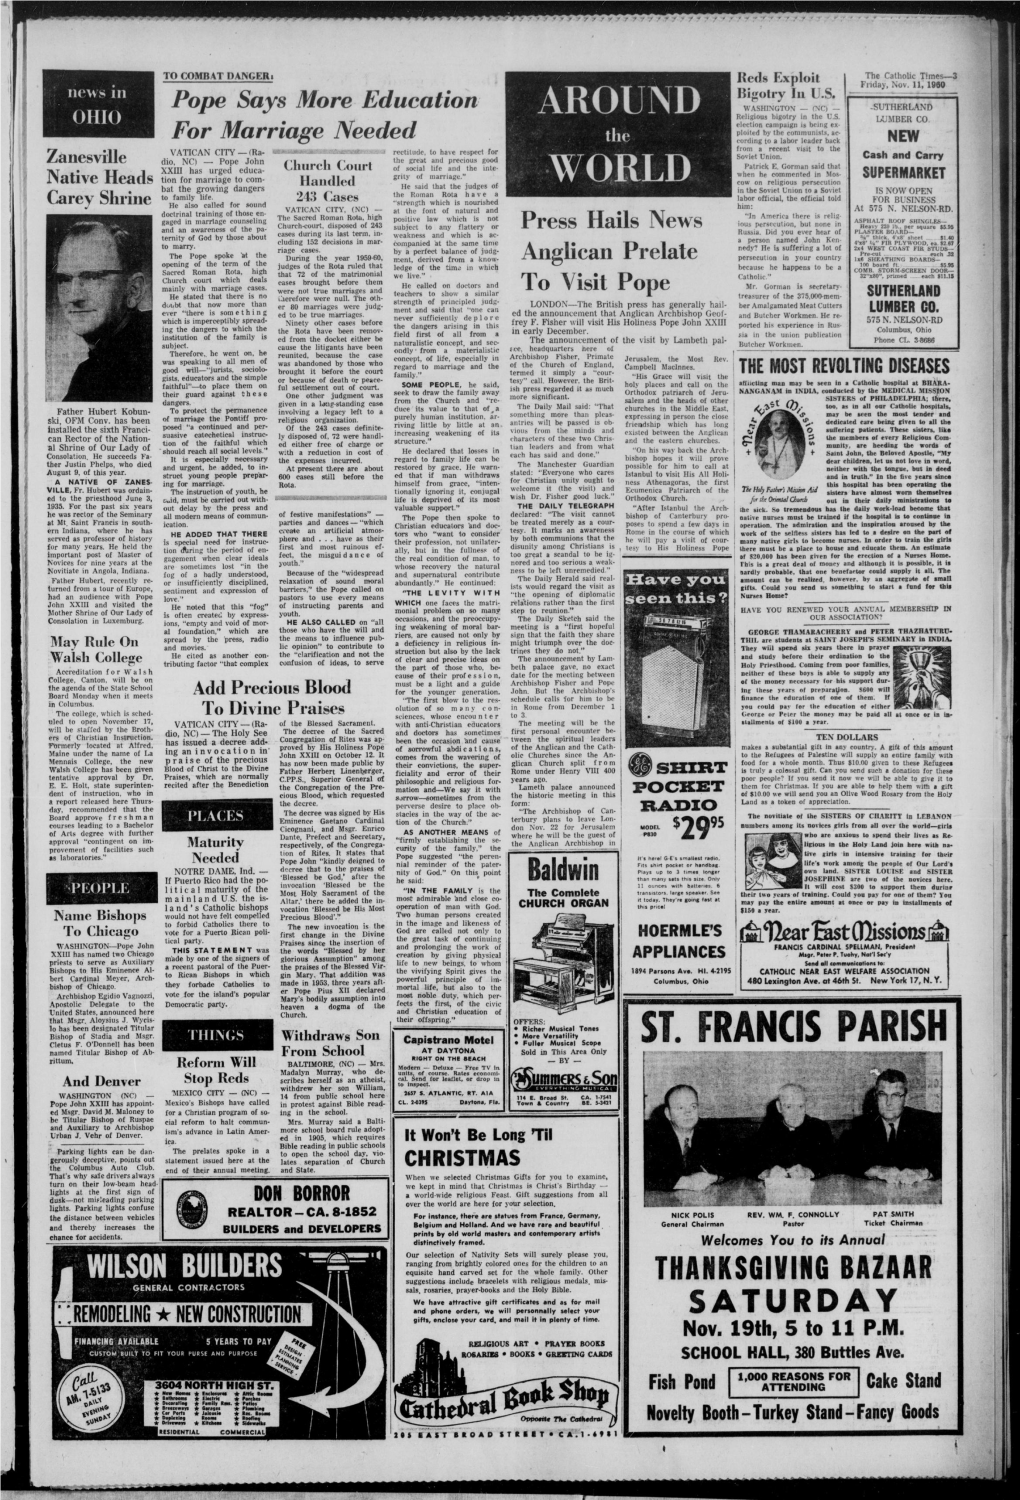 The Catholic Times. (Columbus, Ohio), 1960-11-11